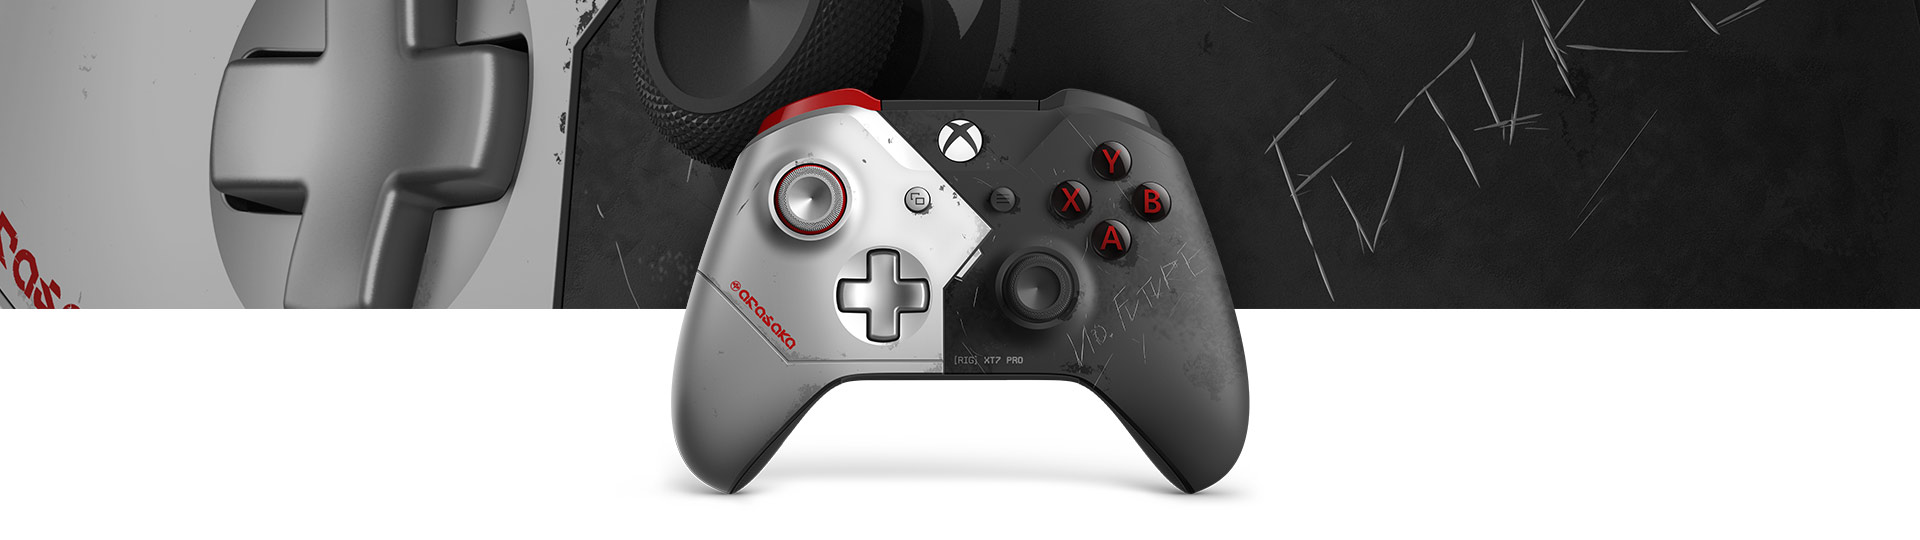 Xbox 无线控制器 -《赛博朋克 2077》限量版正视图，以及《赛博朋克 2077》控制器表面纹理特写